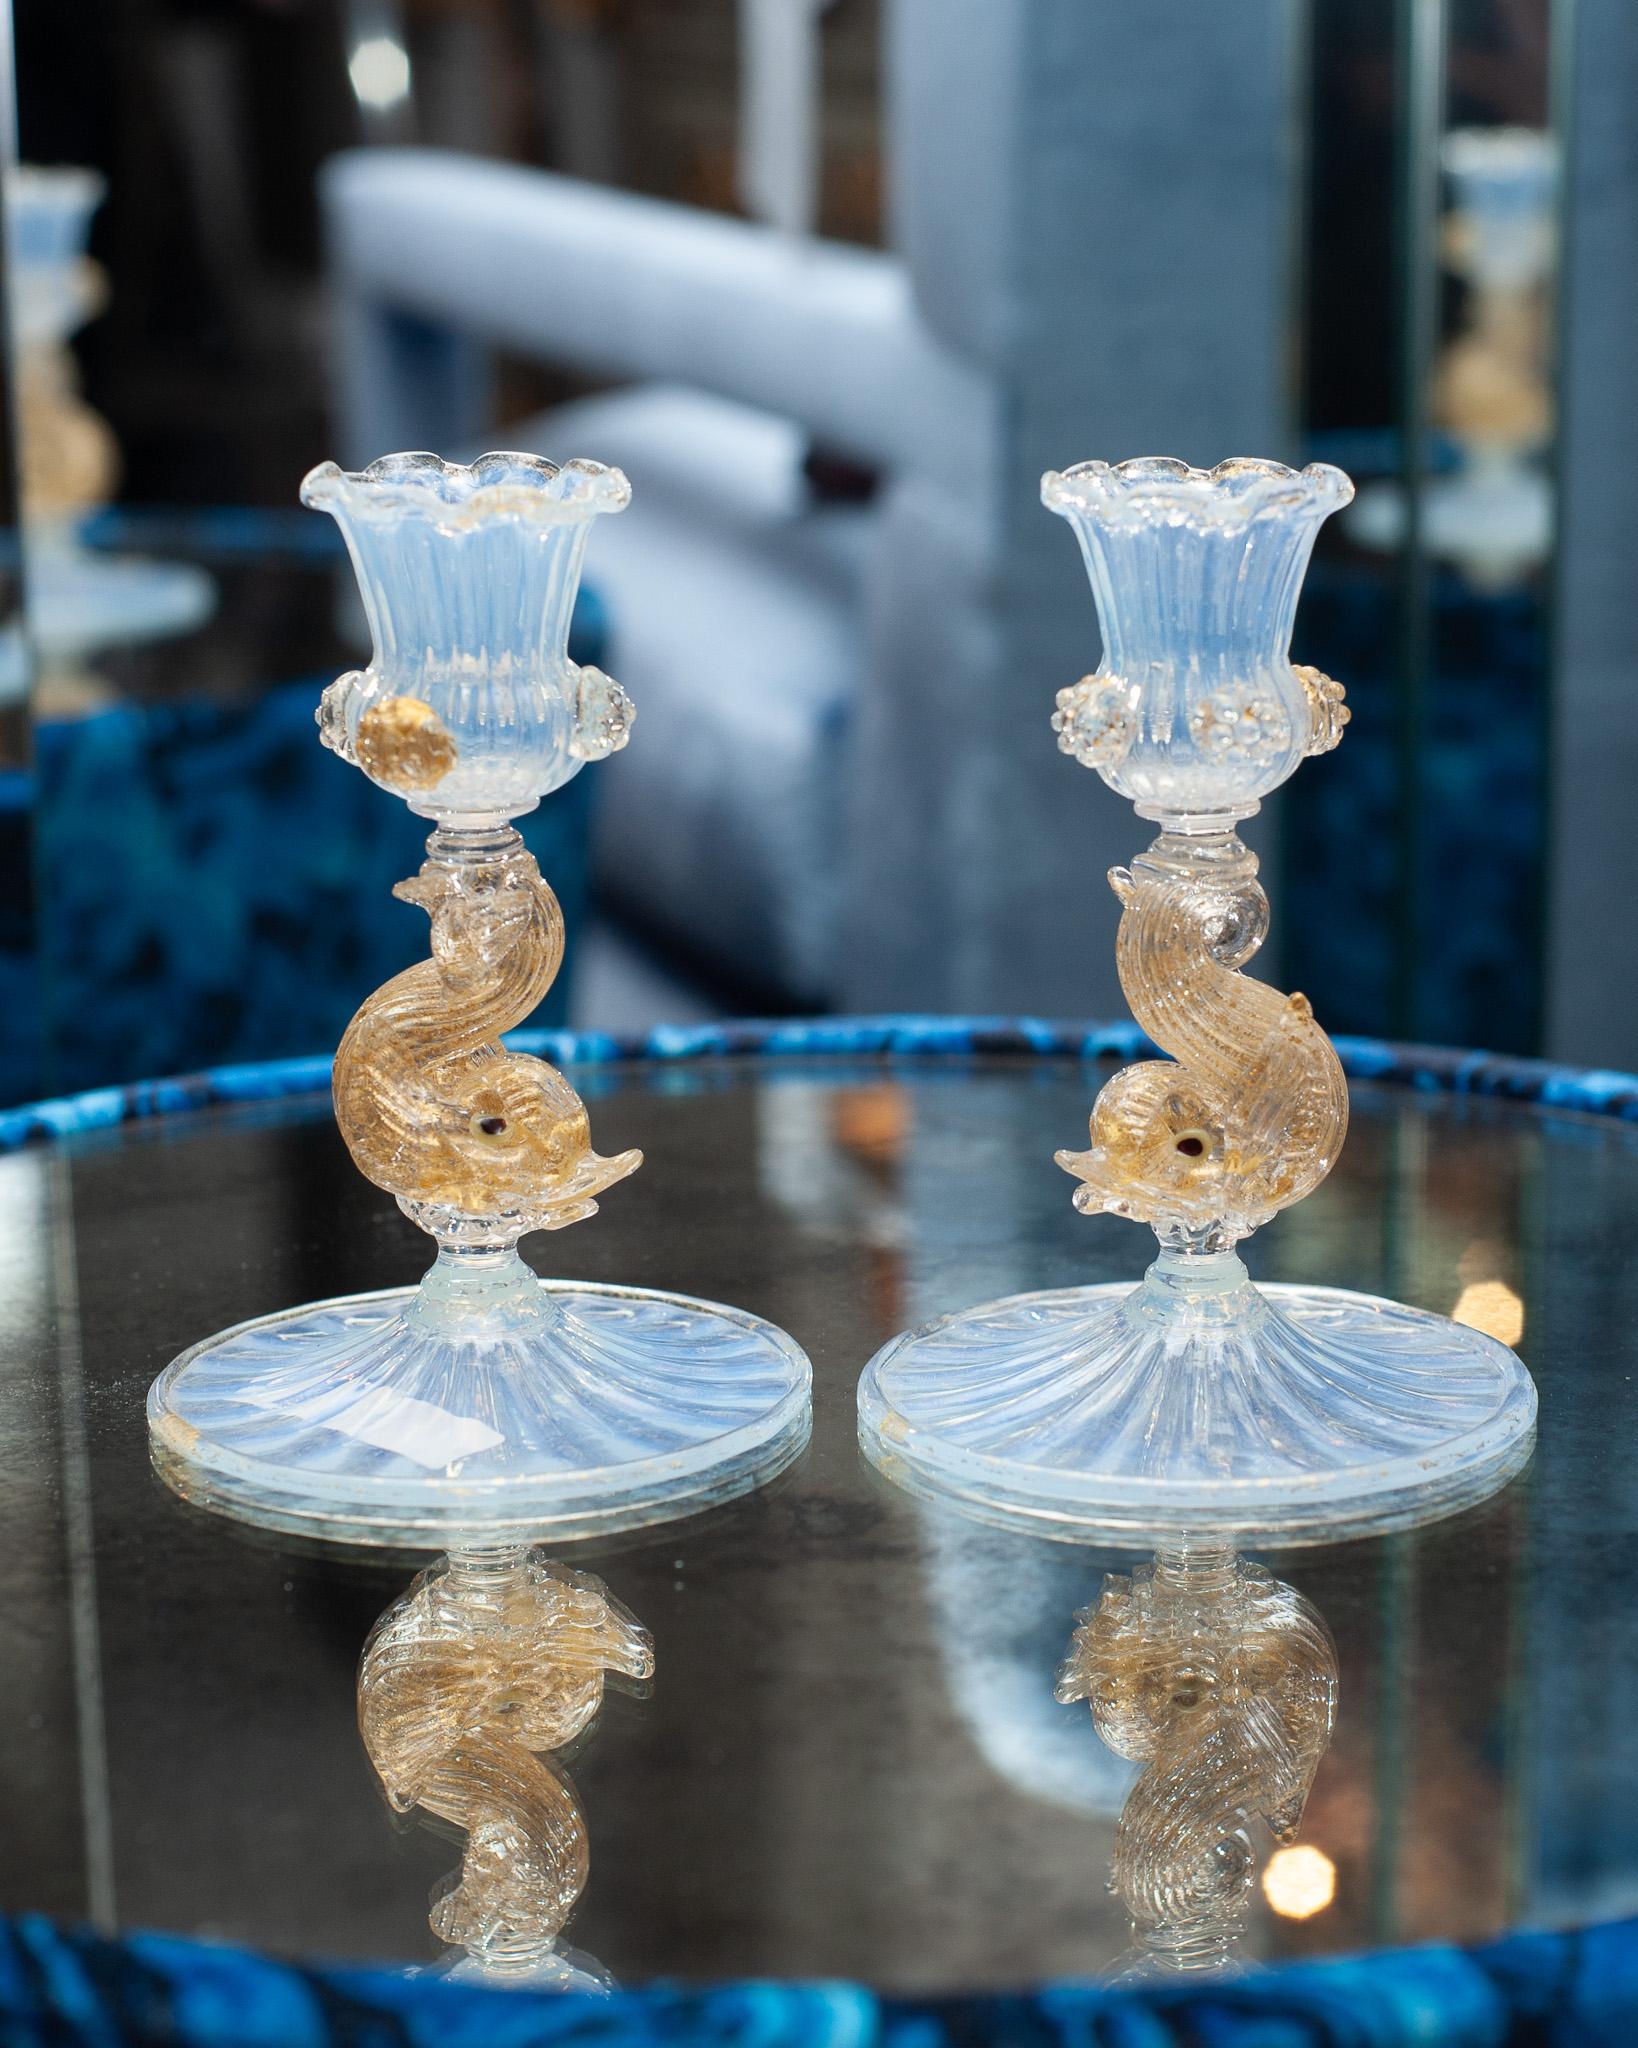 Ein atemberaubendes Paar antiker venezianischer Murano-Glas-Kerzenhalter aus opalisierendem Glas und Blattgold mit Delphinmotiv. Sie sind ein perfekter kleinerer Kerzenständer und schön gemacht. Diese Kerzenständer sind eine wunderbare Ergänzung für